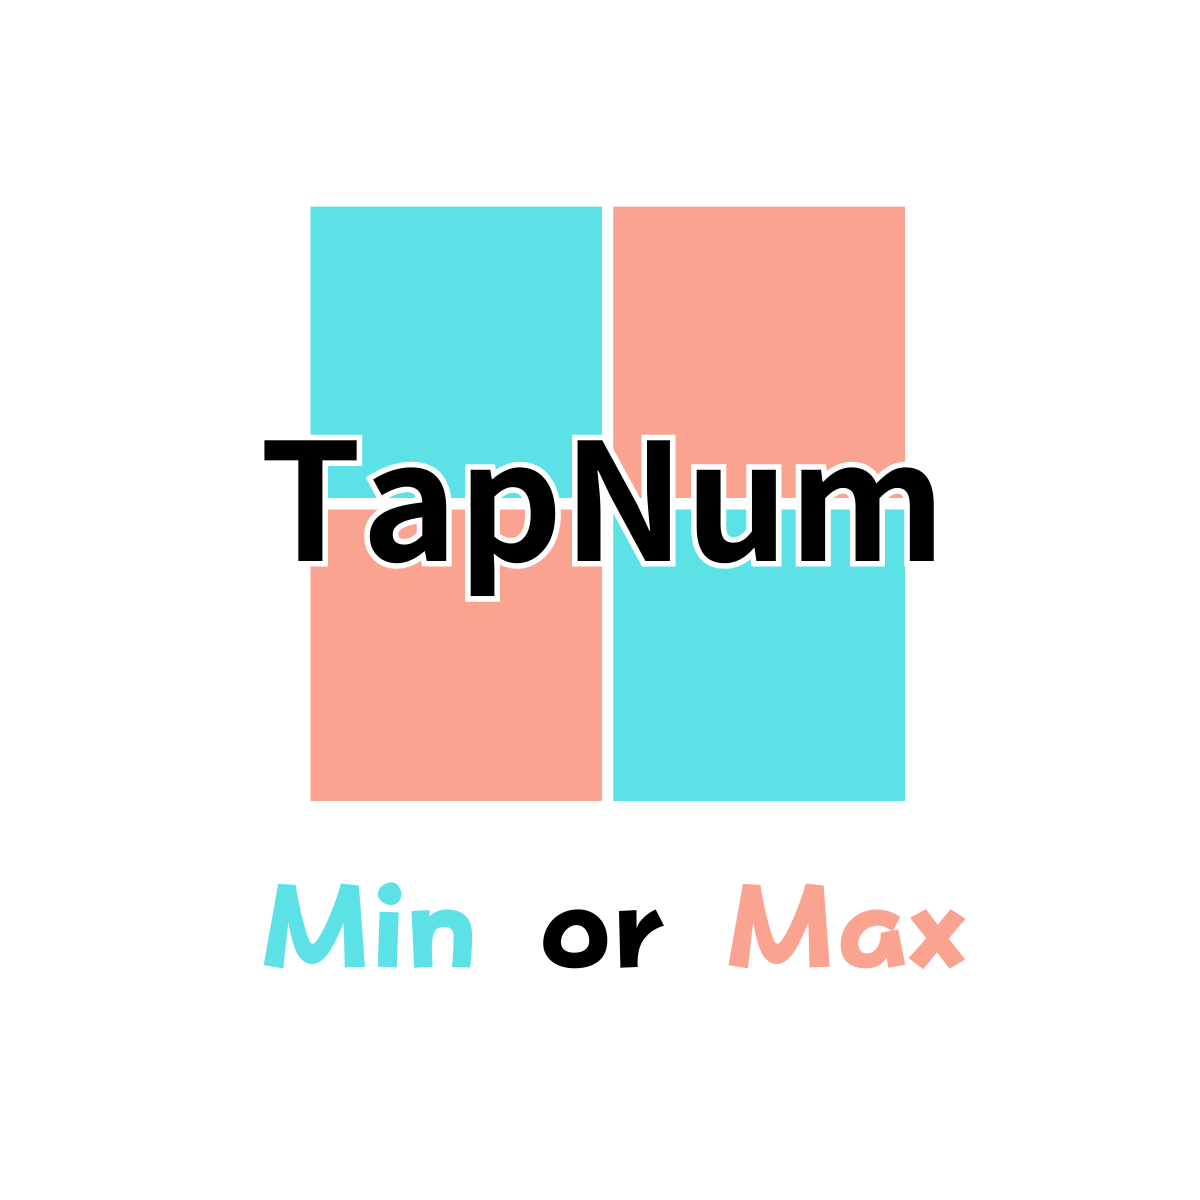 TapNum -Min or Max-